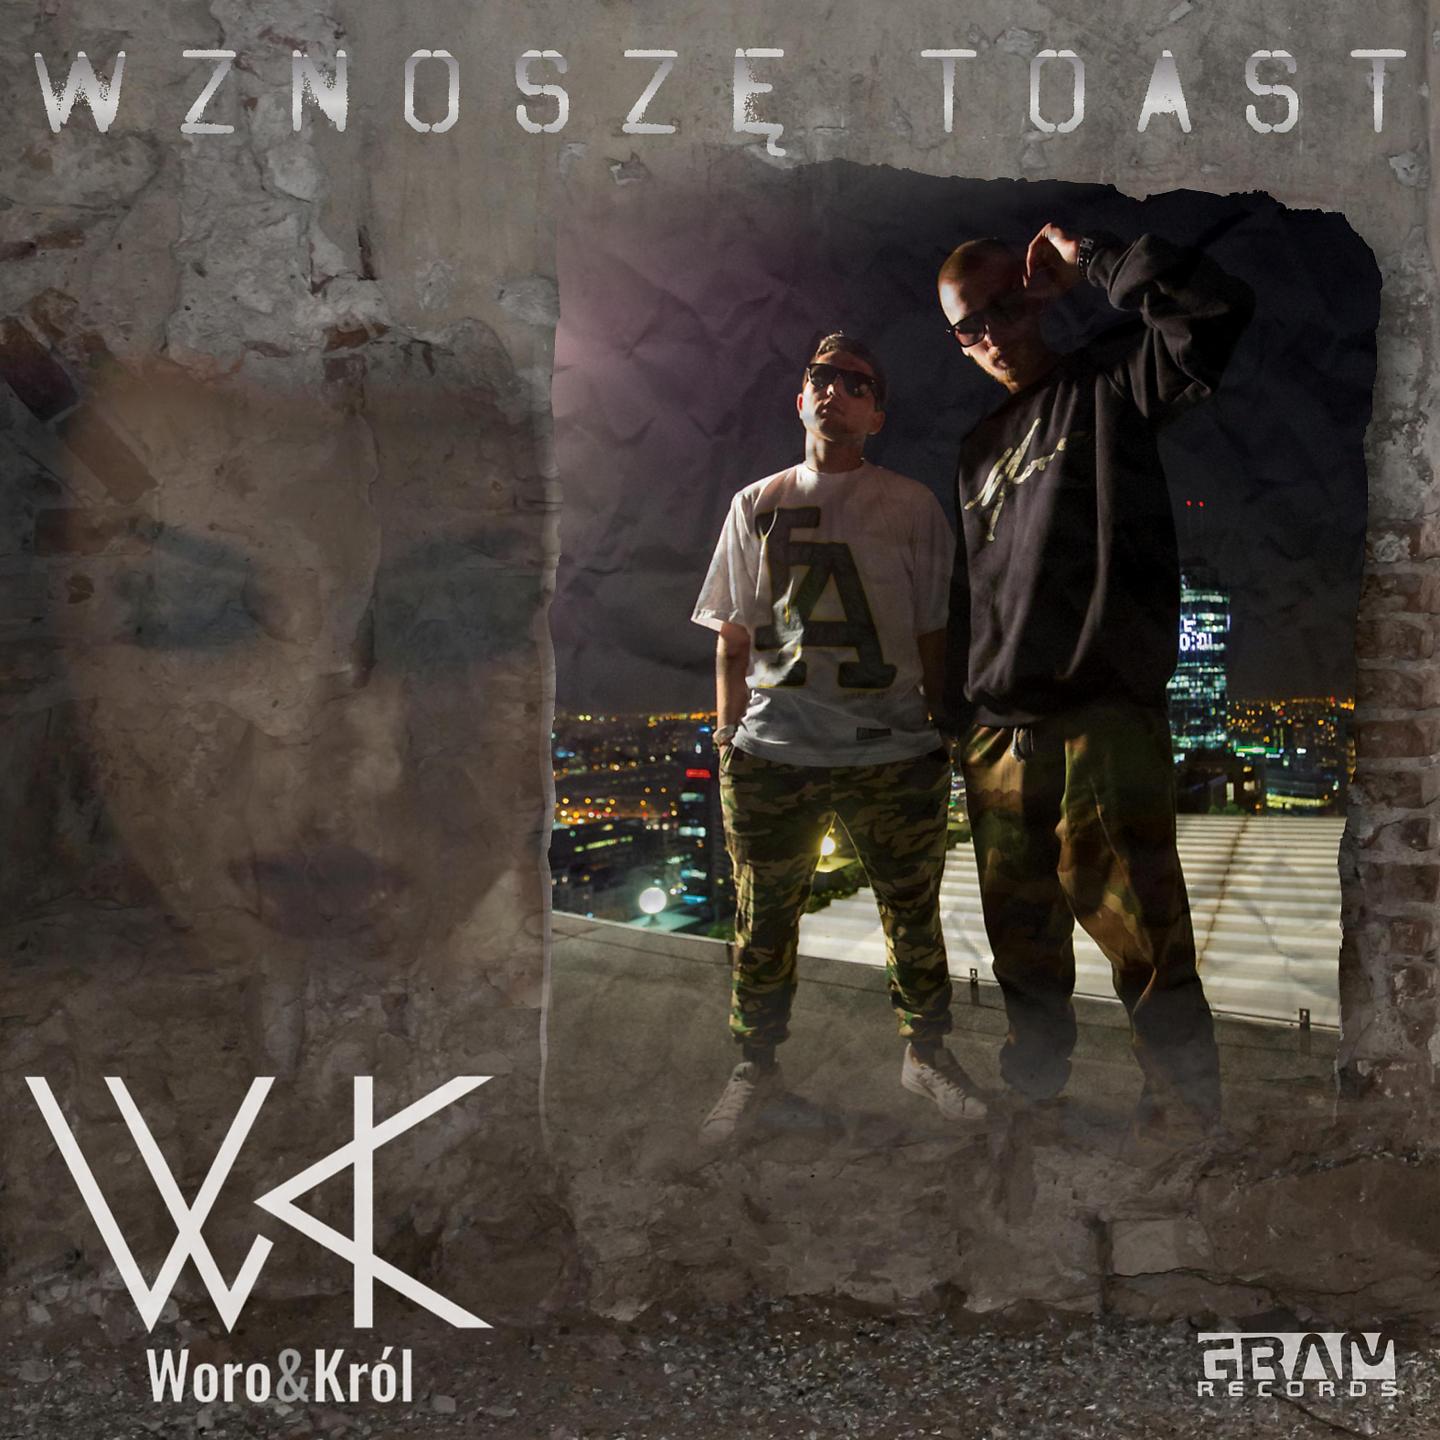 Постер альбома Wznoszę Toast